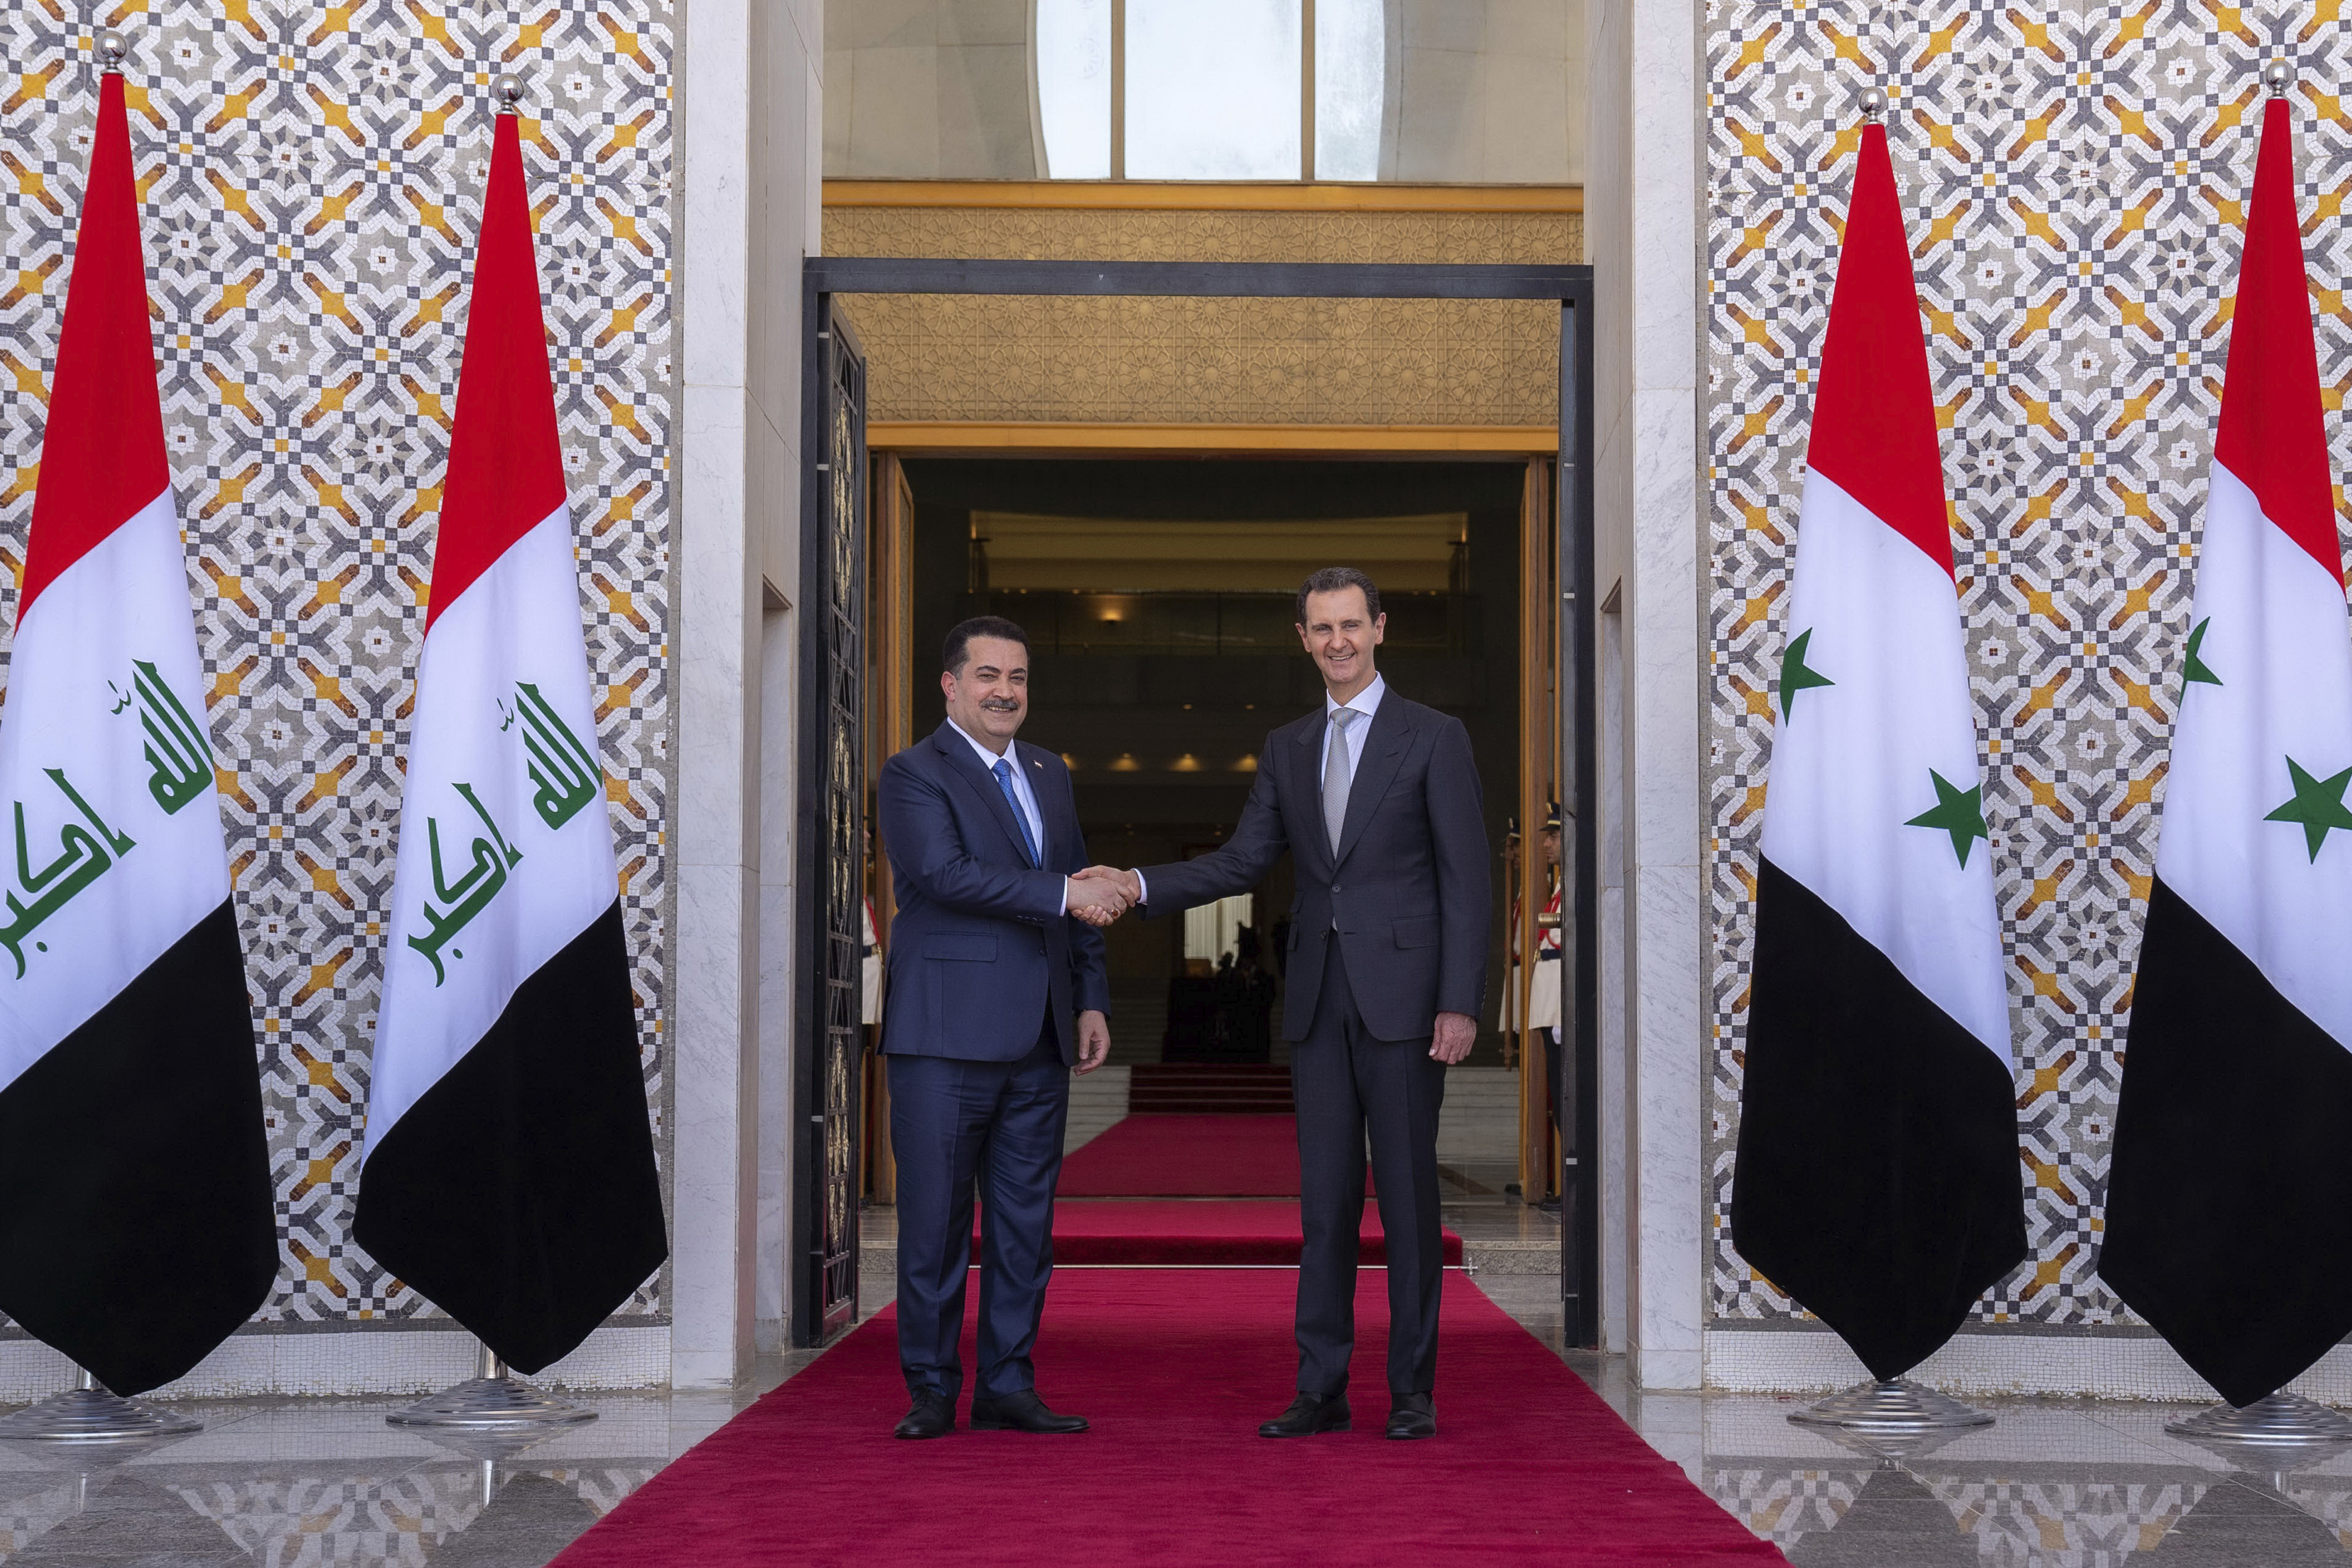 Δράσεις για την καταπολέμηση της τρομοκρατίας συζήτησαν ο πρόεδρος της Συρίας με τον πρωθυπουργό του Ιράκ